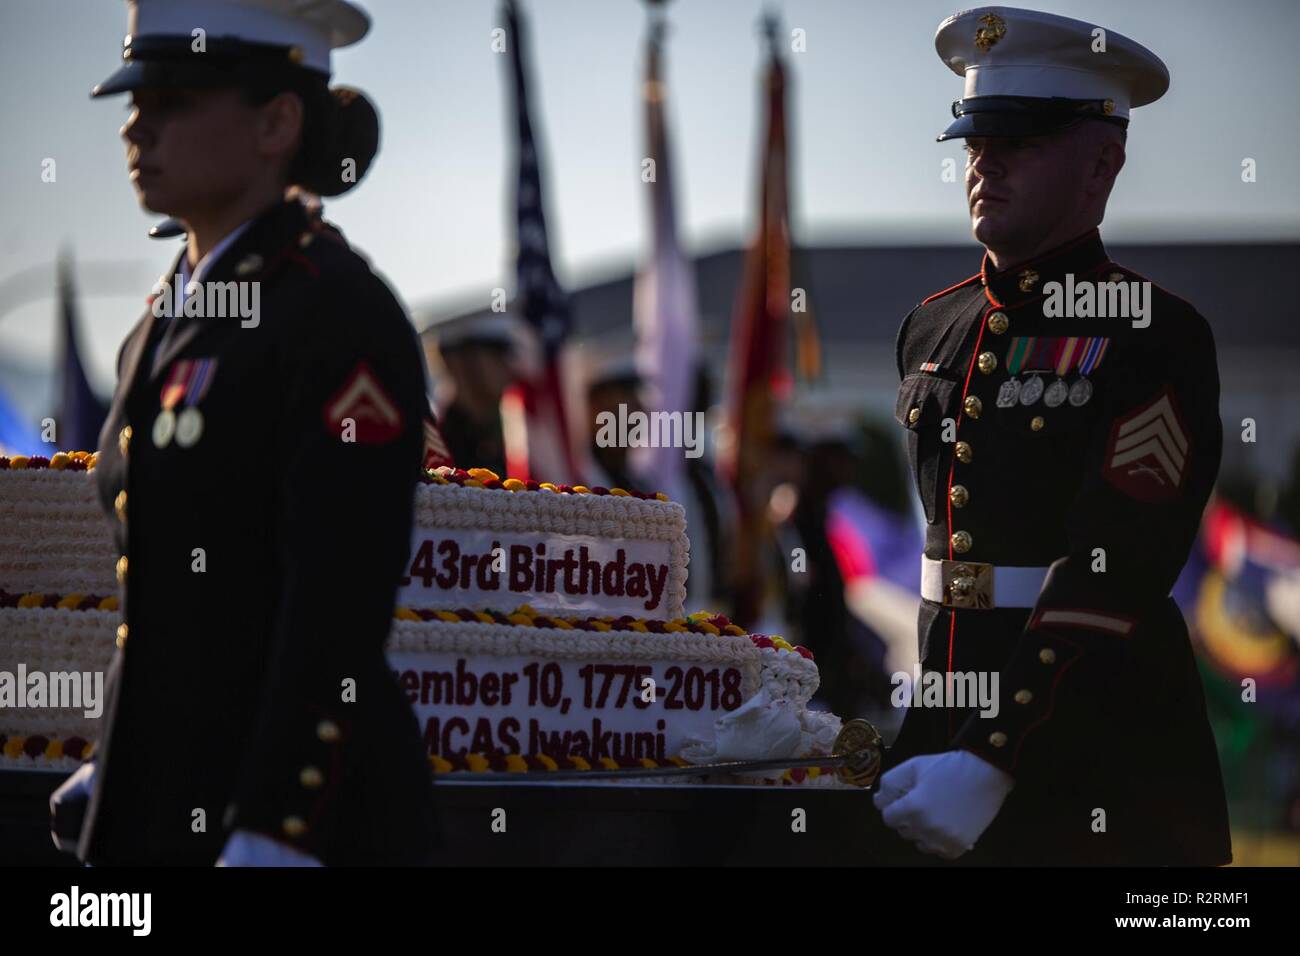 Les Marines américains avec le Siège et l'Escadron (H&HS) transporter un gâteau d'anniversaire du Corps des marines au cours de la 243e anniversaire du Corps des Marines pageant uniforme au Marine Corps Air Station Iwakuni, Japon, le 5 novembre 2018. La cérémonie annuelle s'est tenue en l'honneur du 243e anniversaire du Corps des Marines. Il comprenait un uniforme historique pageant pour honorer les Marines du passé, le présent et l'avenir tout en signifiant l'adoption de traditions d'une génération à l'autre. Banque D'Images